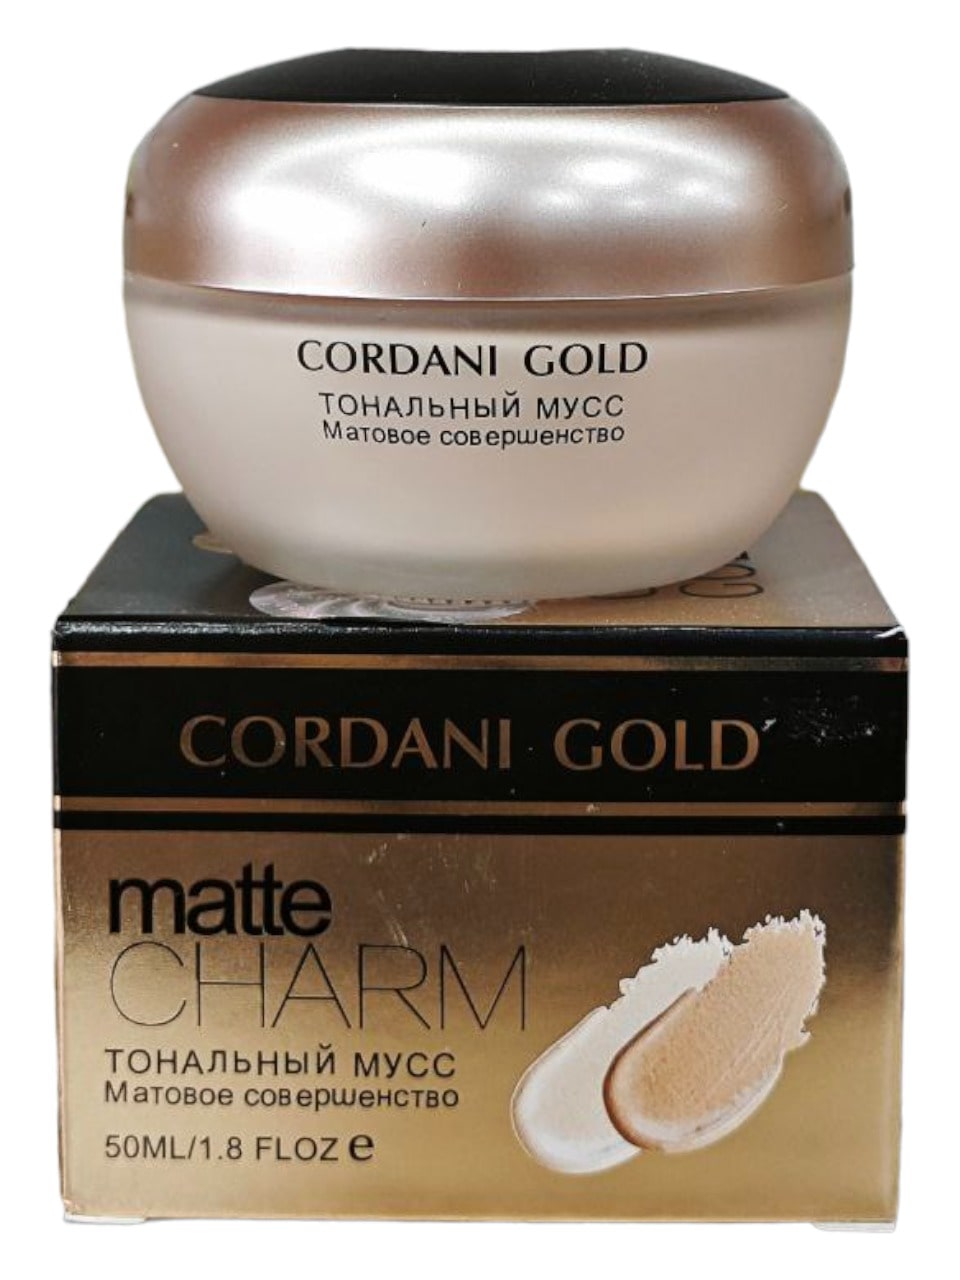 Cordani gold